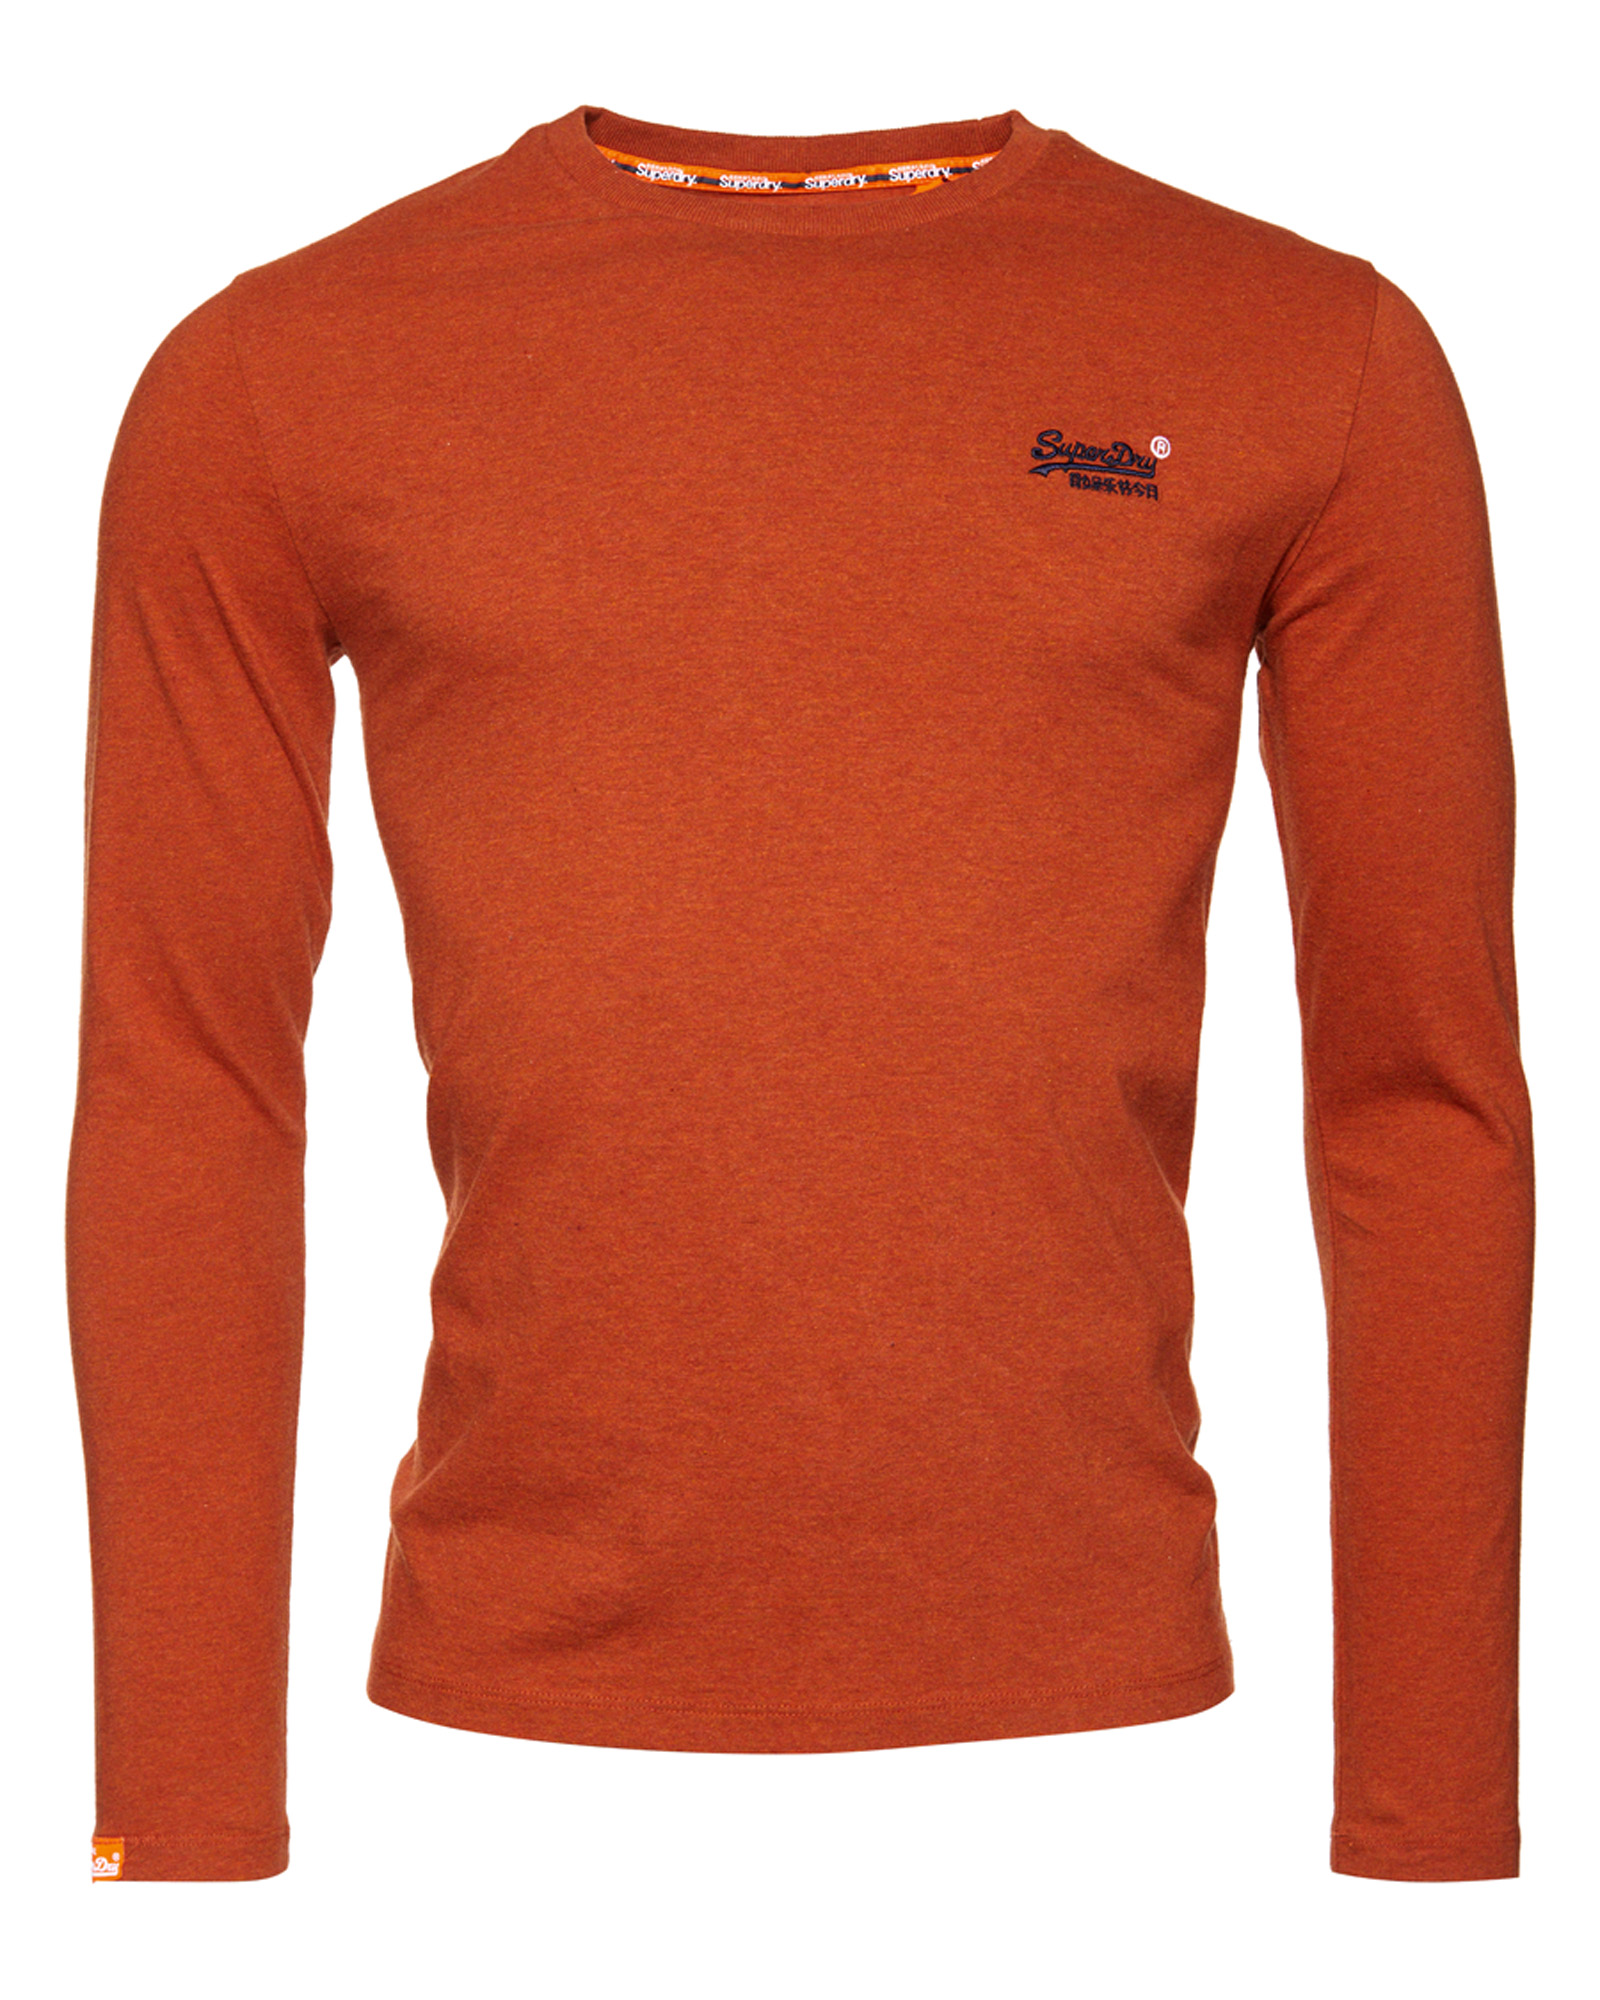 Superdry Shirt Orange Label in Orangemeliert 